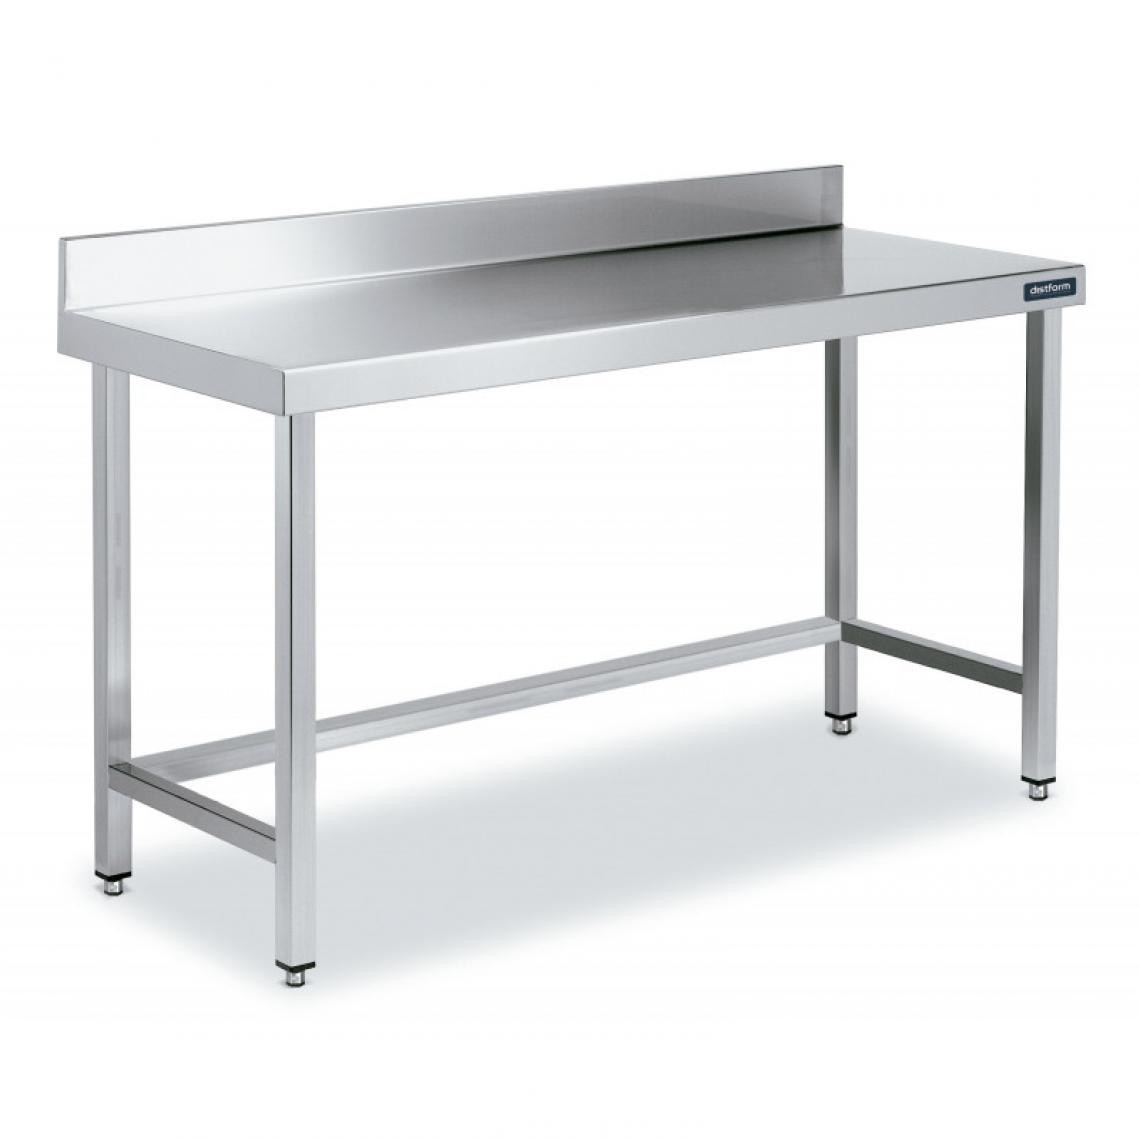 DISTFORM - Table Adossée en Inox avec Renforts Profondeur 700 mm - Distform - Acier inoxydable2200x700 - Tables à manger